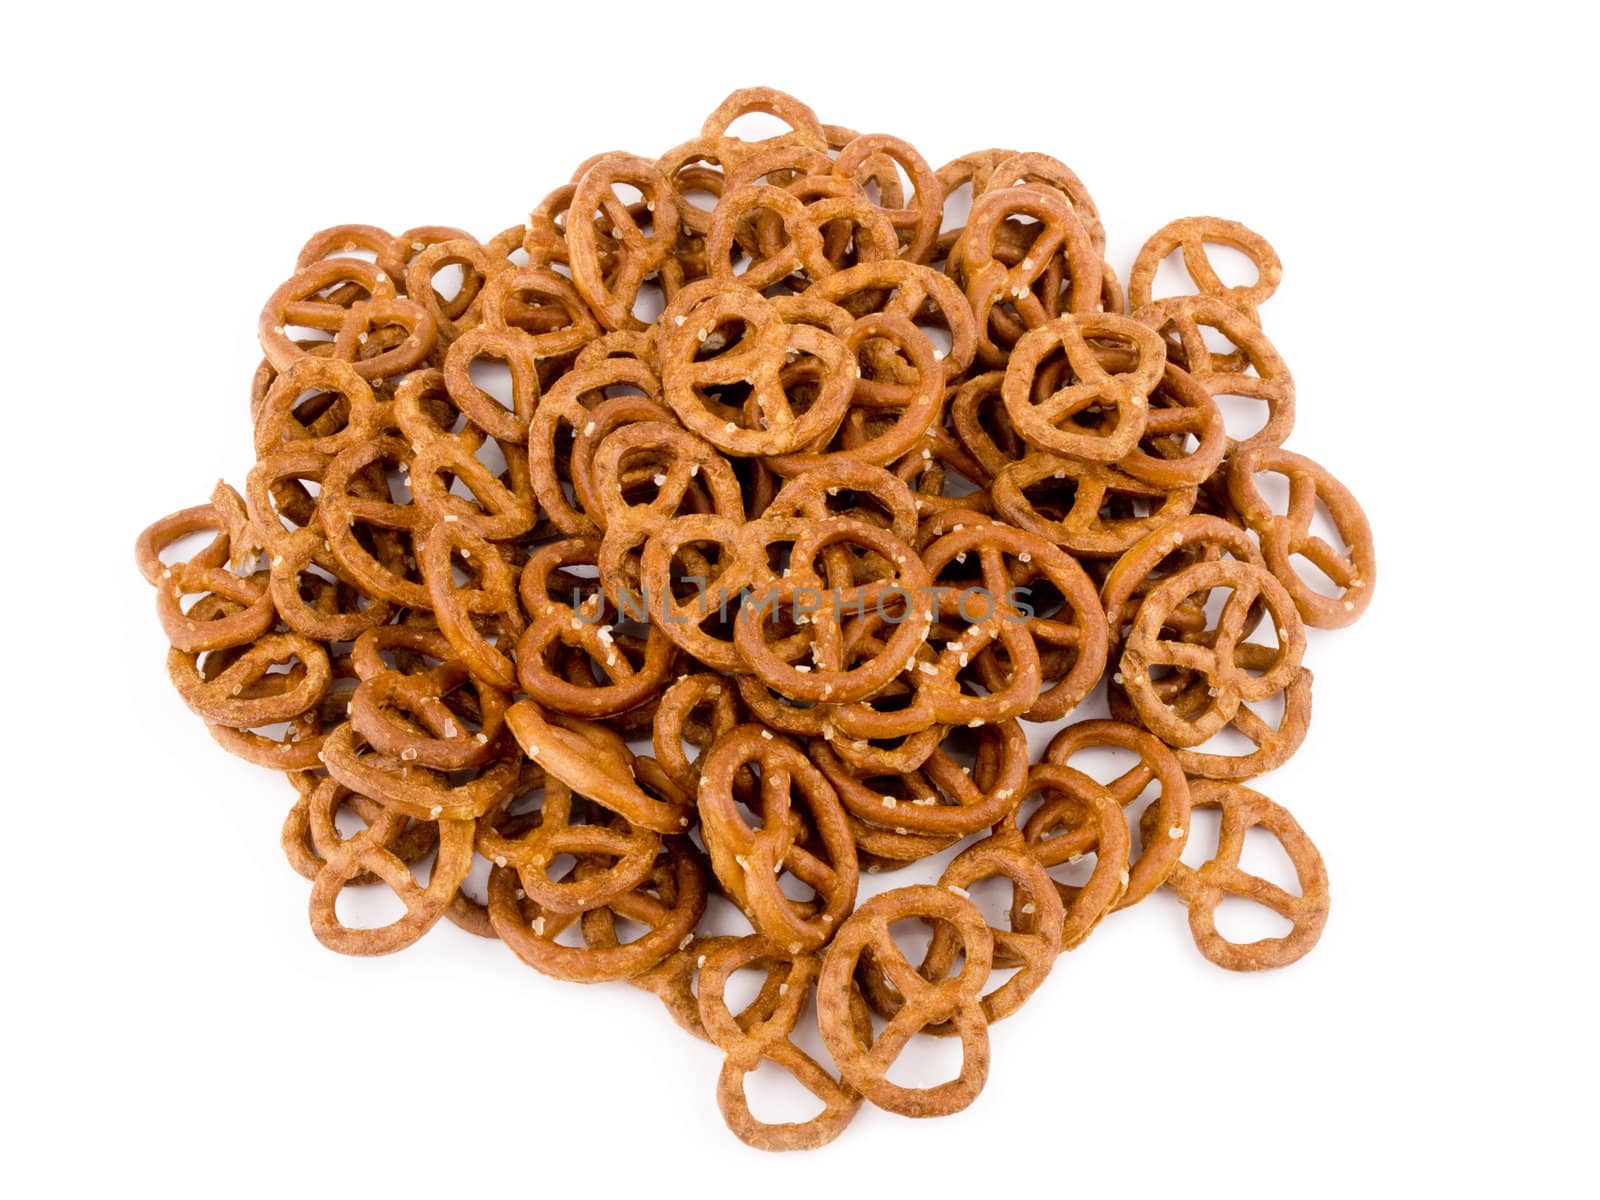 Tasty pretzels on white background